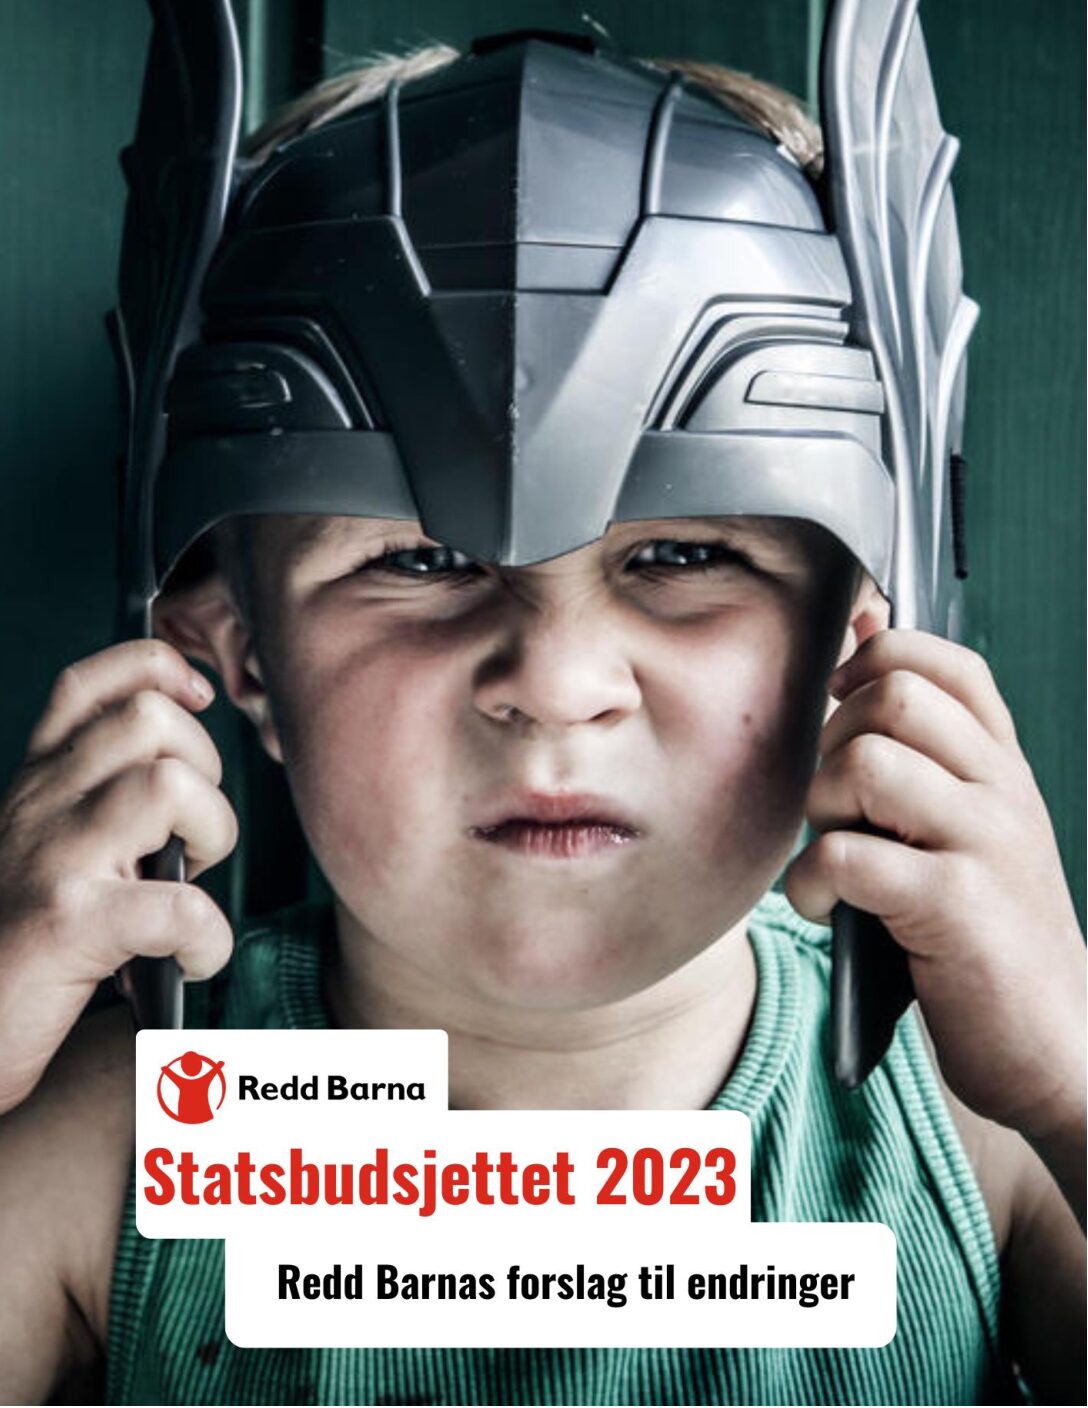 Et budsjett for barn i Norge